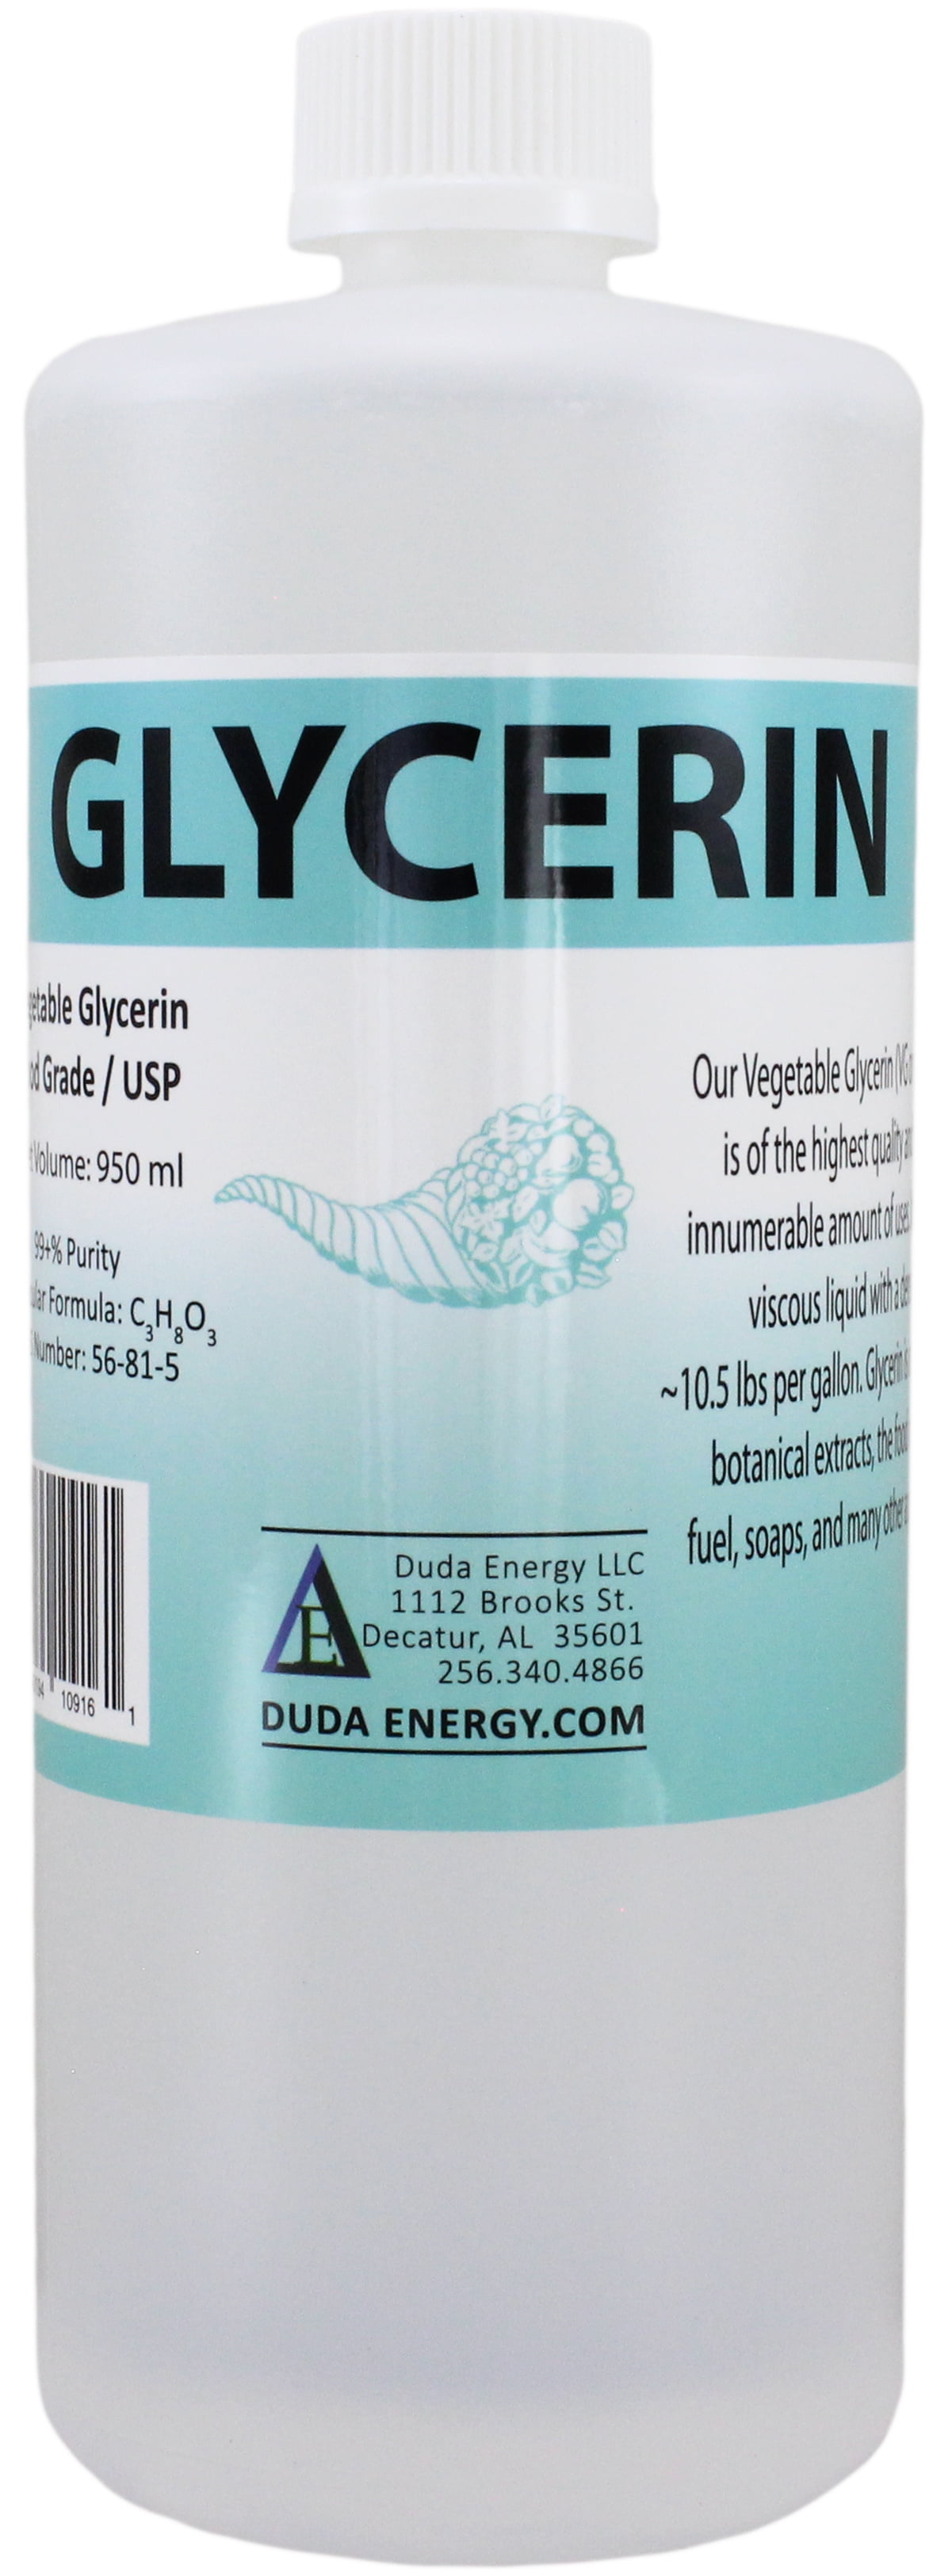 1 L Glycerin 99.5% in PET Flasche